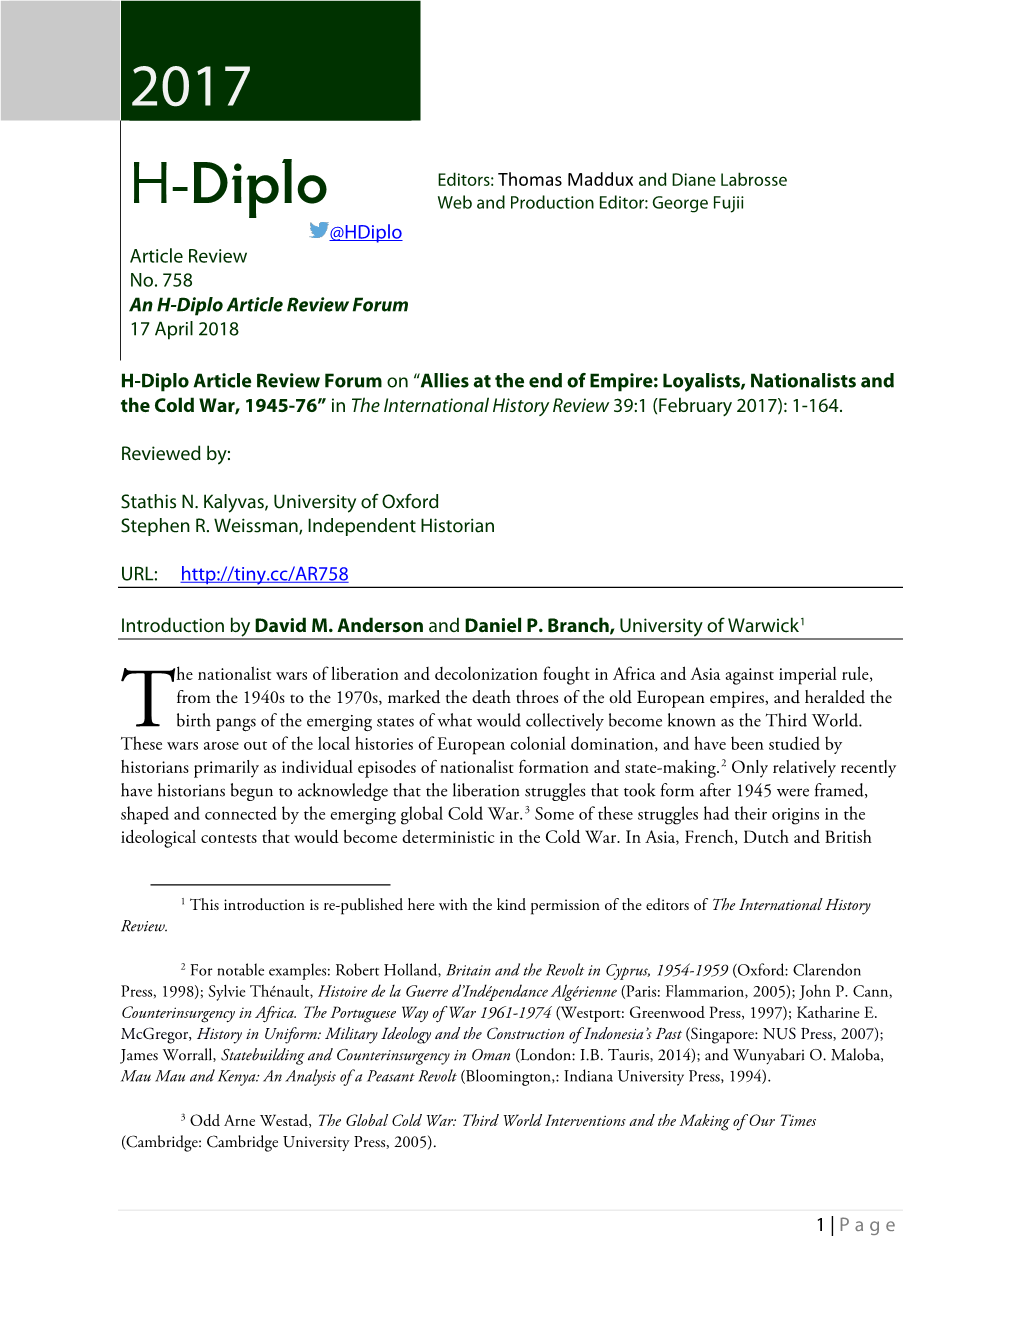 H-Diplo Article Review Forum 17 April 2018